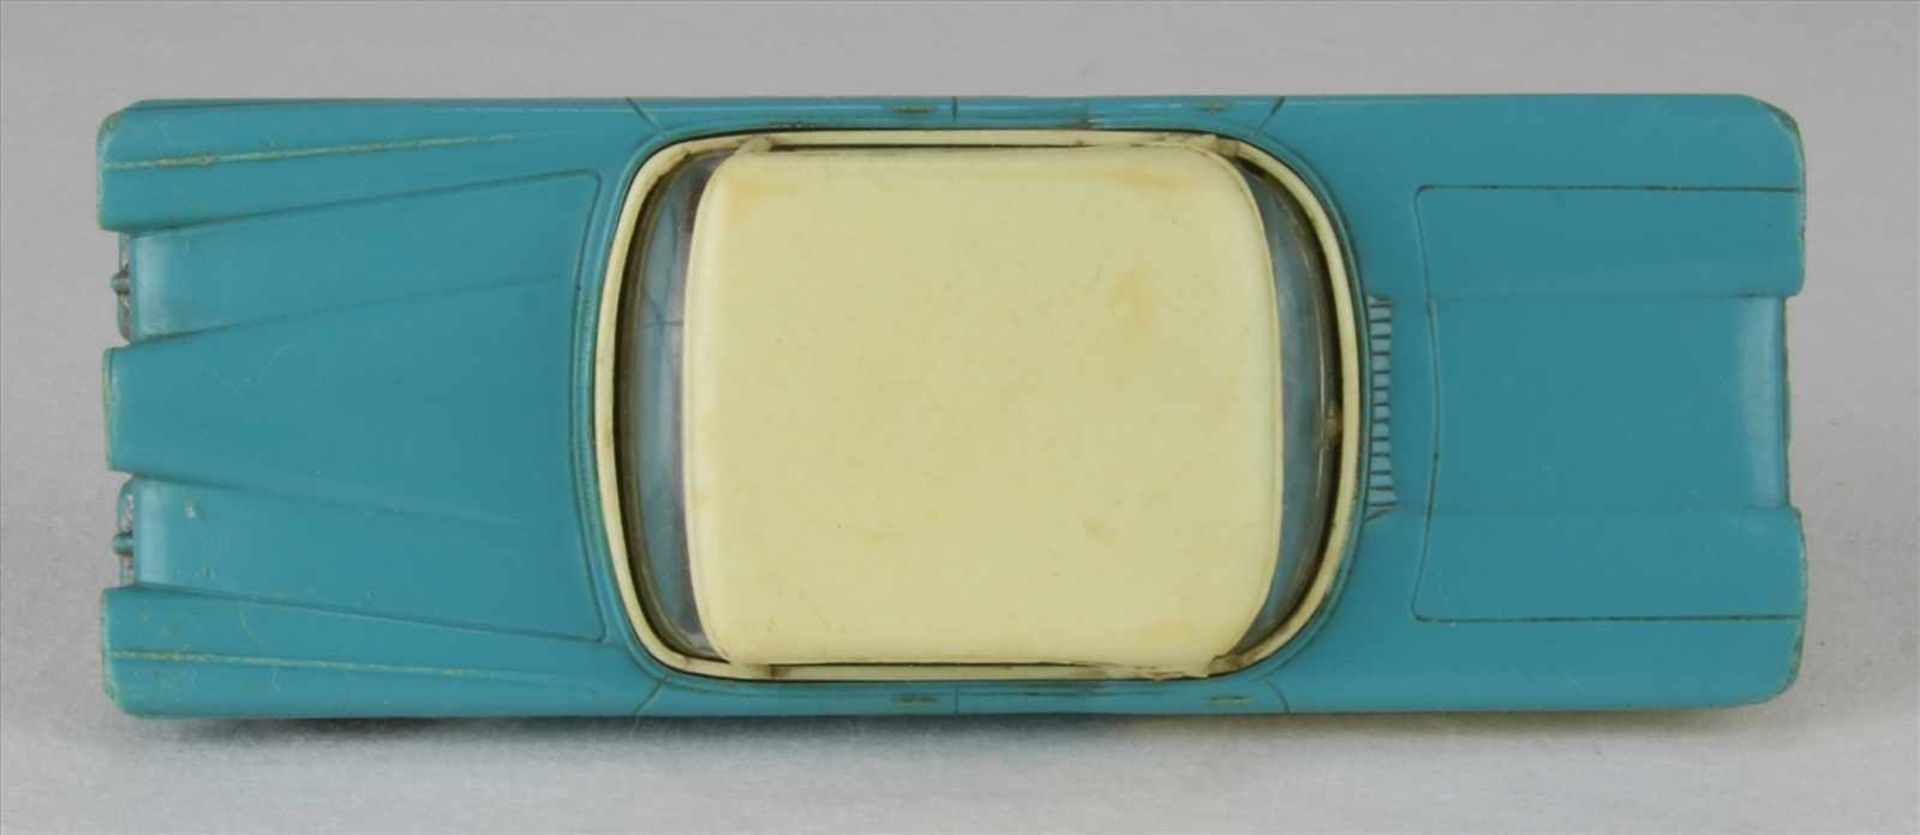 Siku Ford EdselV98 mit Garagenbox. Zustand wie abgebildet. - Image 5 of 7